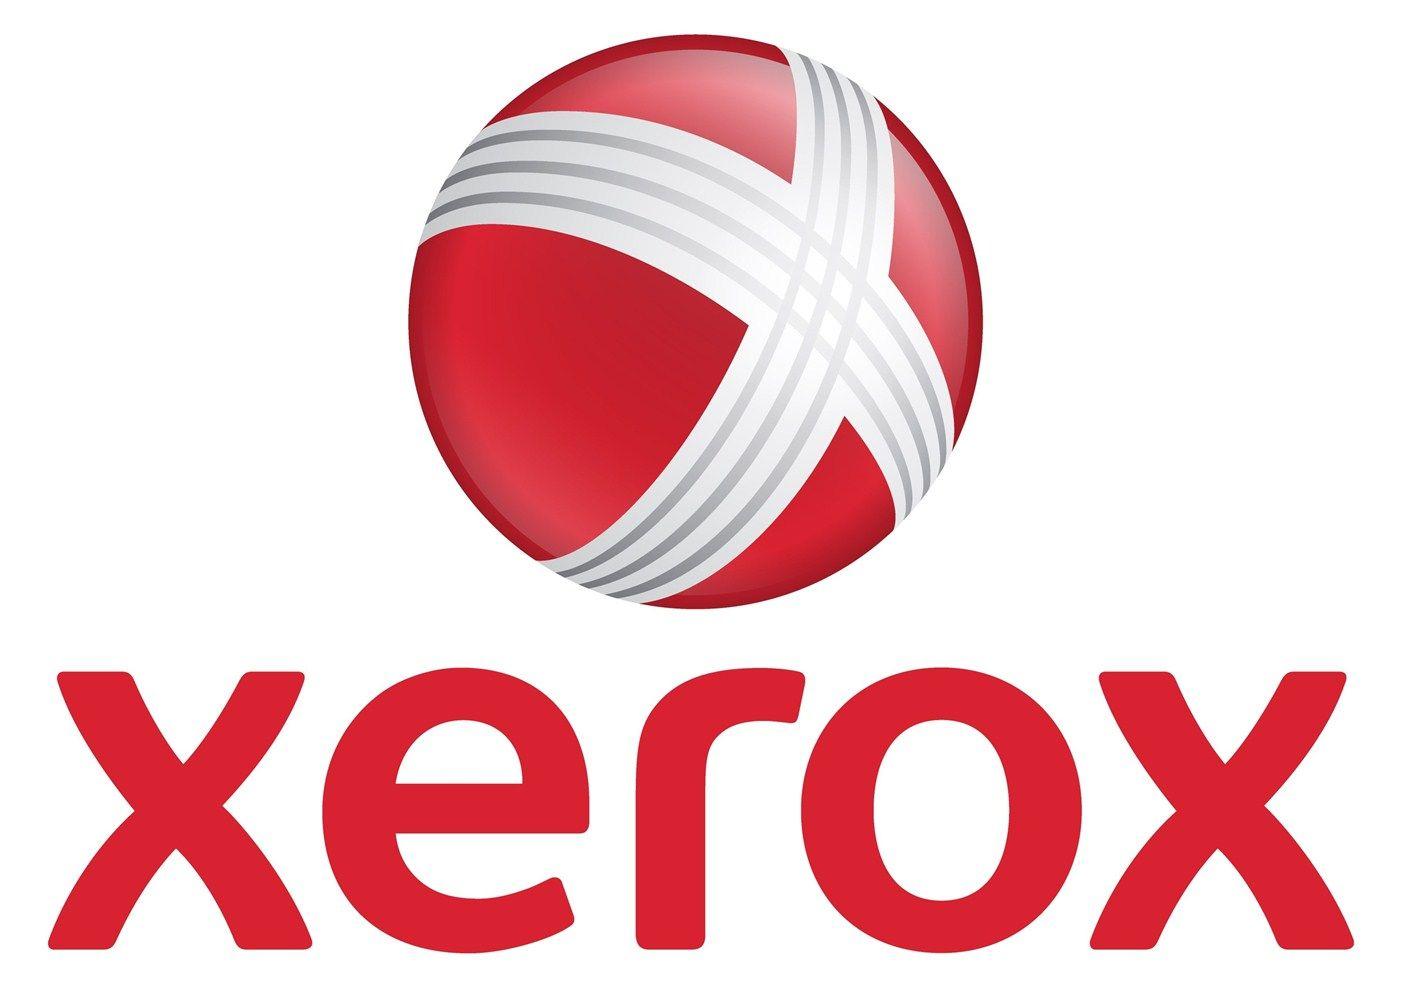 Old Xerox Logo - xerox logo - Kleo.wagenaardentistry.com